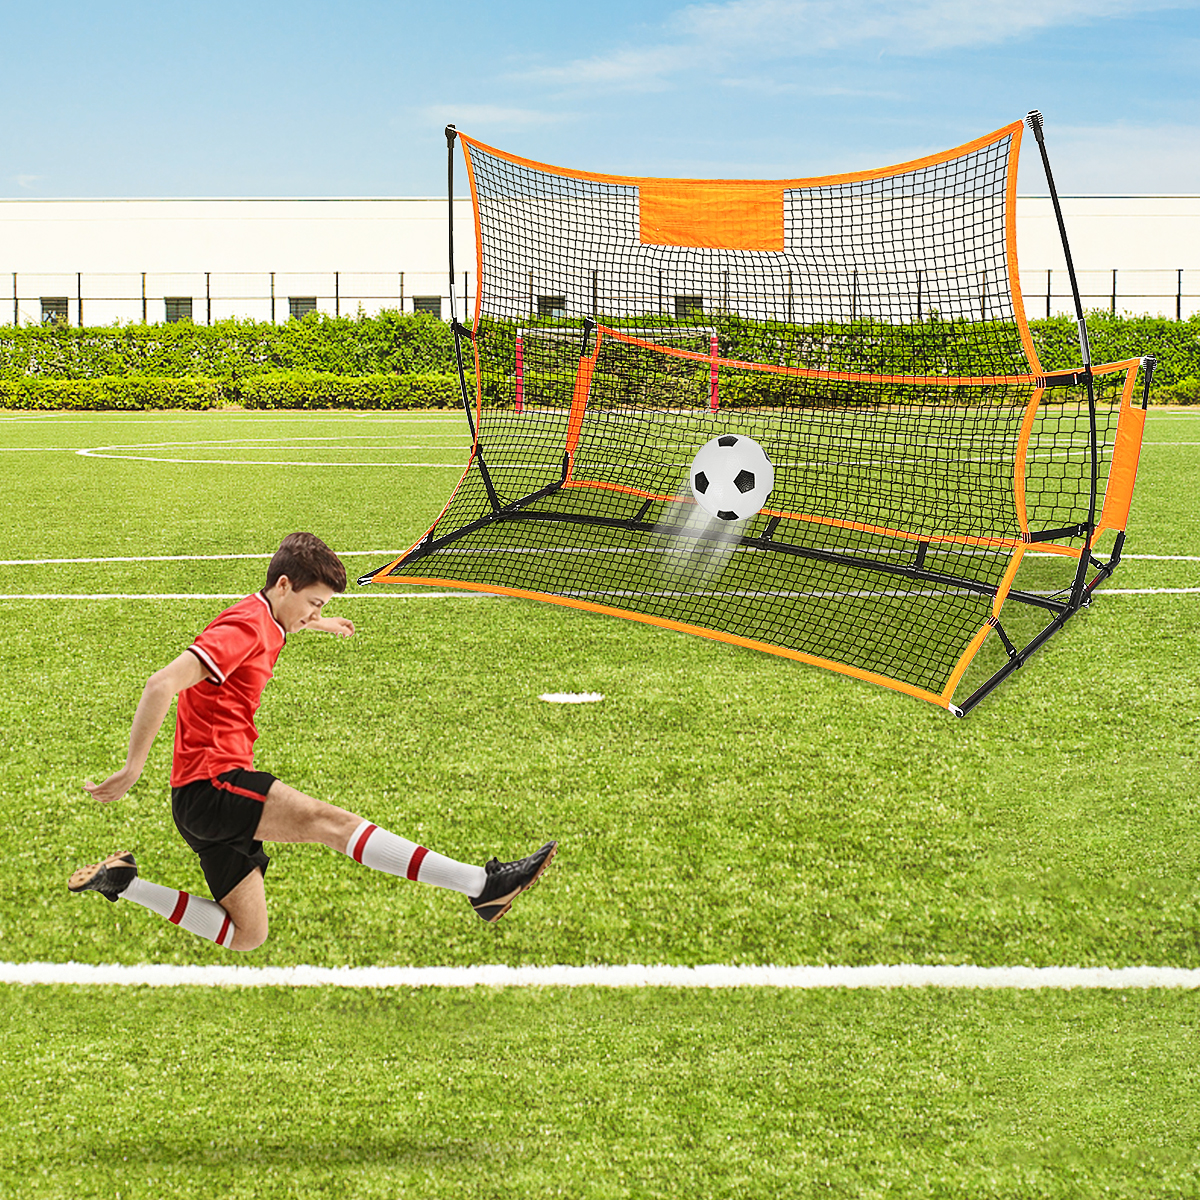 1821M-Soccer-Rebounder-Net-Portable-Folding-Football-Goal-Shoot-Training-Equipment-Outdoor-Sport-1817403-9